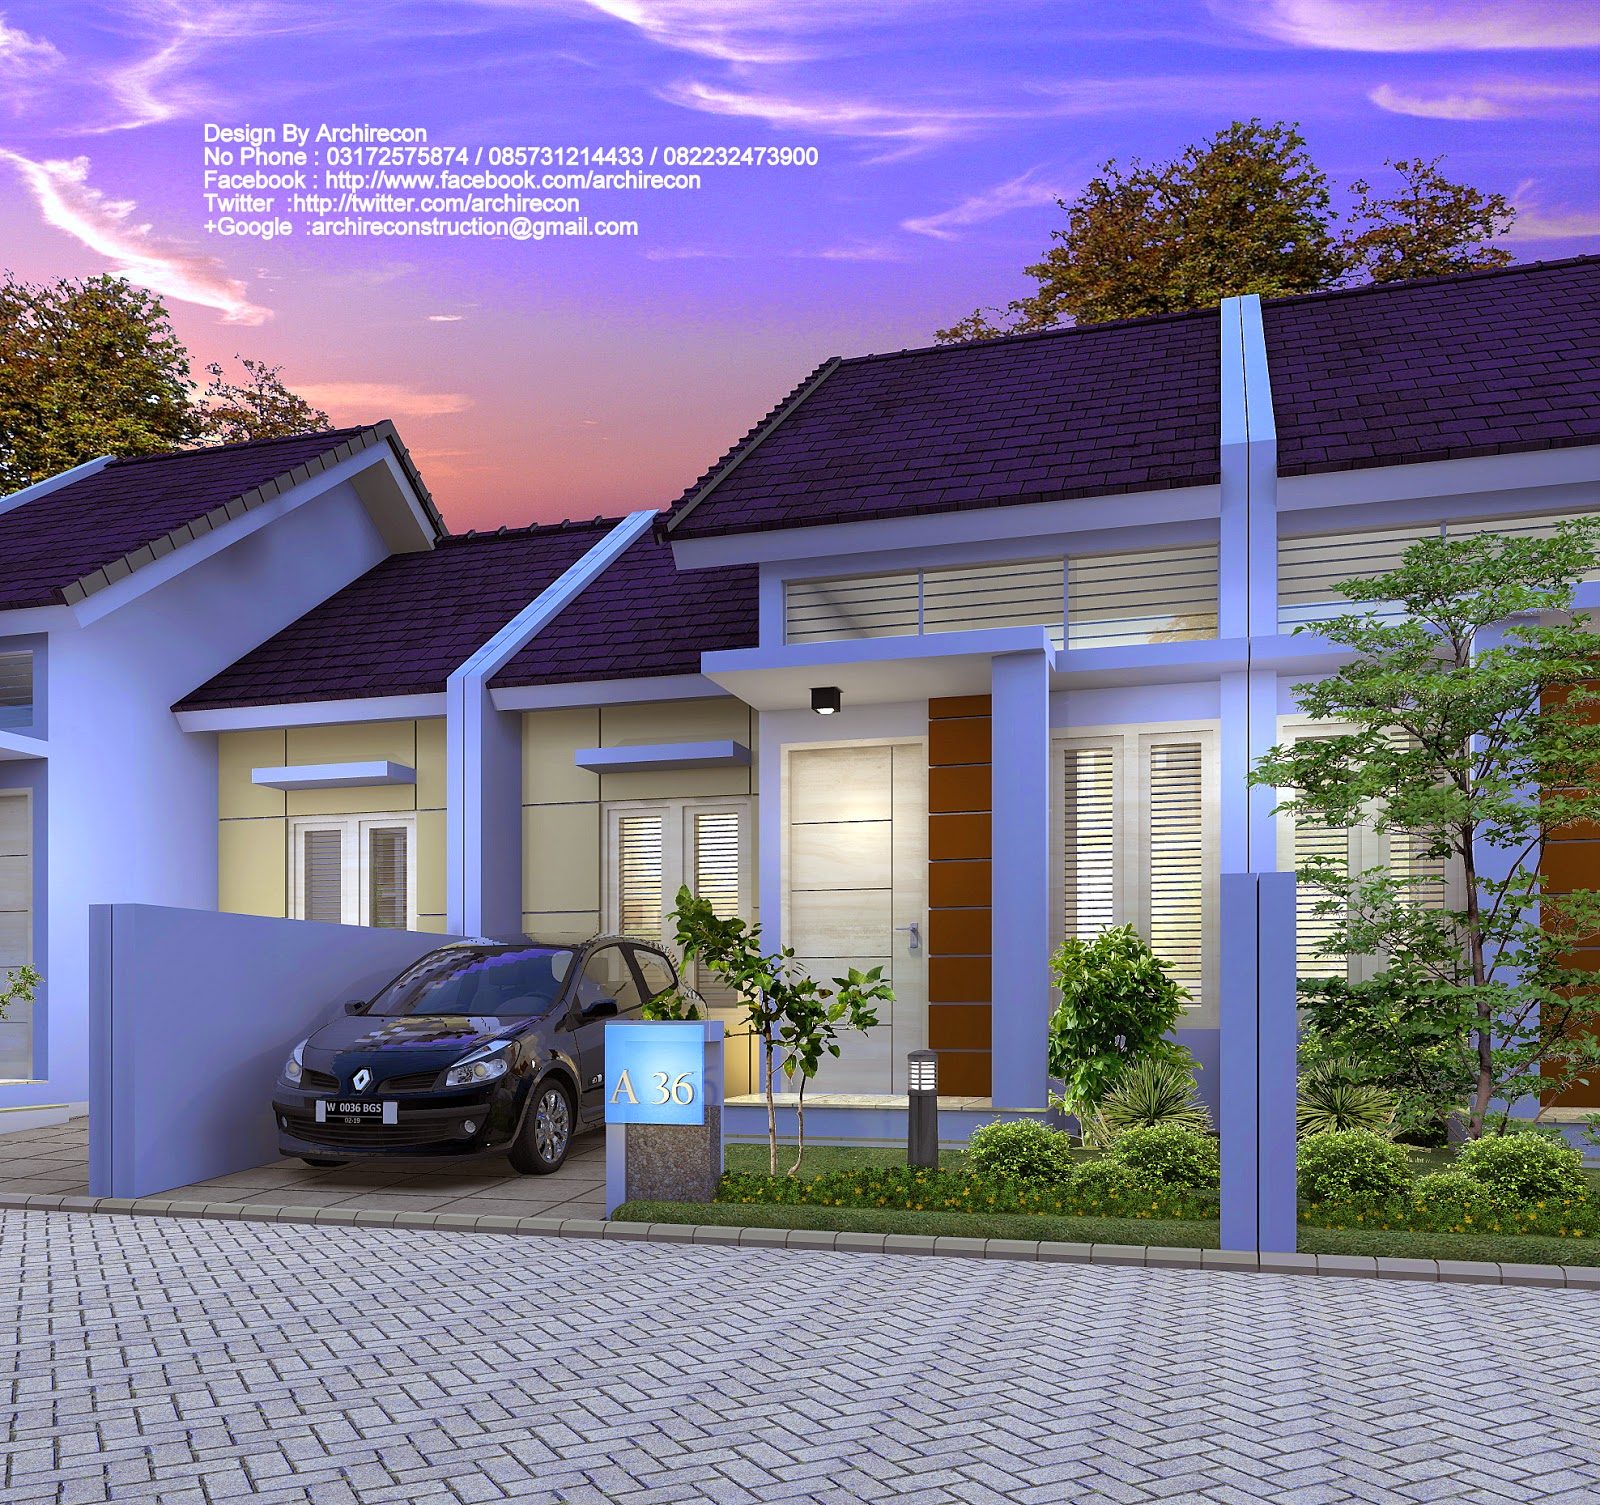 Jasa Desain Rumah Mewah Di Surabaya